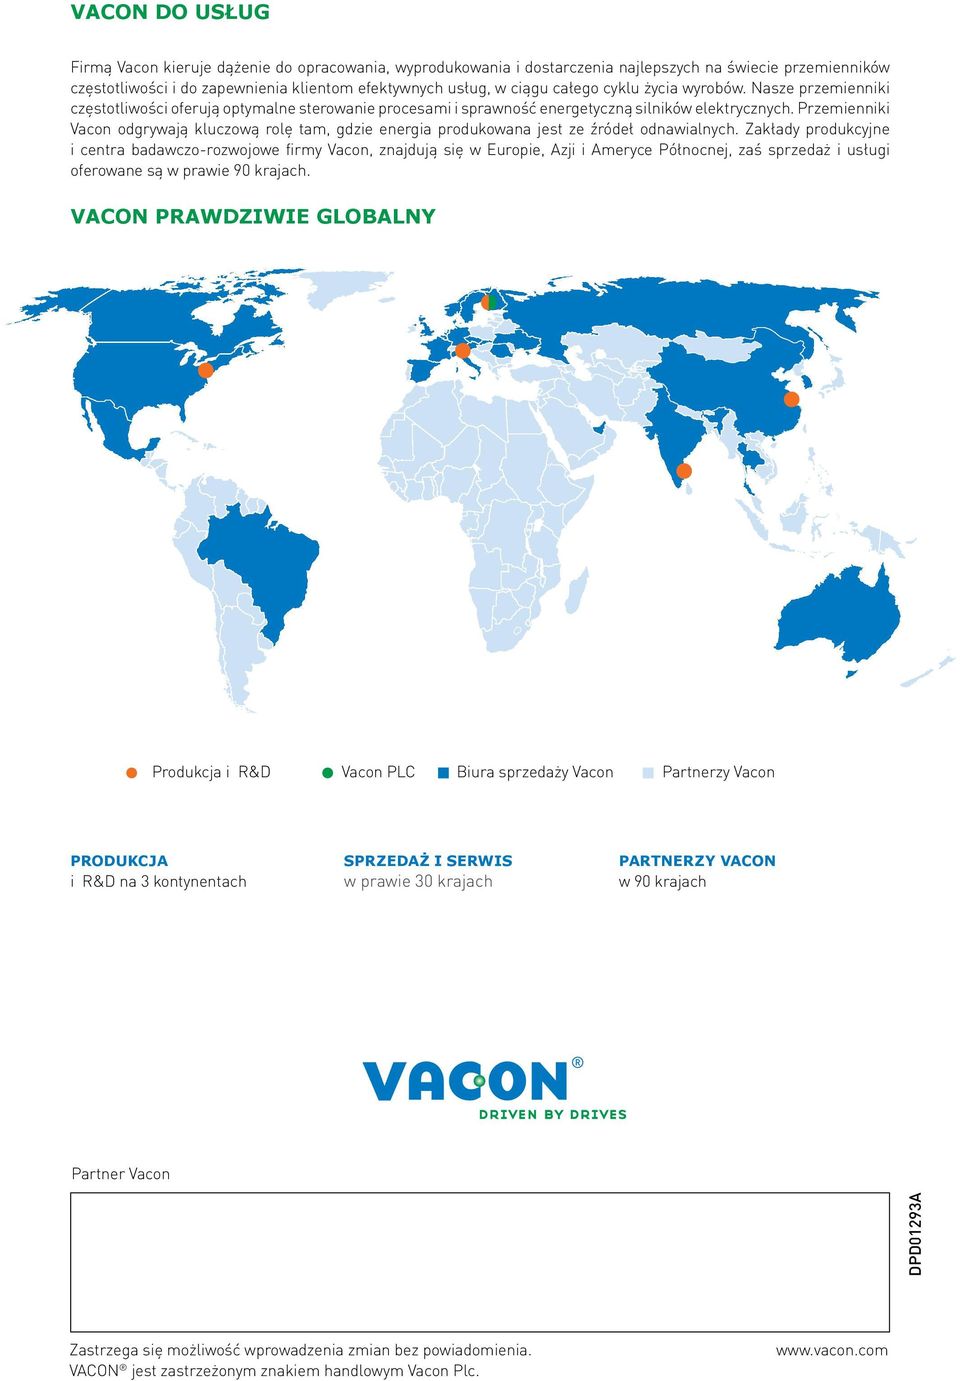 Przemienniki Vacon odgrywają kluczową rolę tam, gdzie energia produkowana jest ze źródeł odnawialnych.